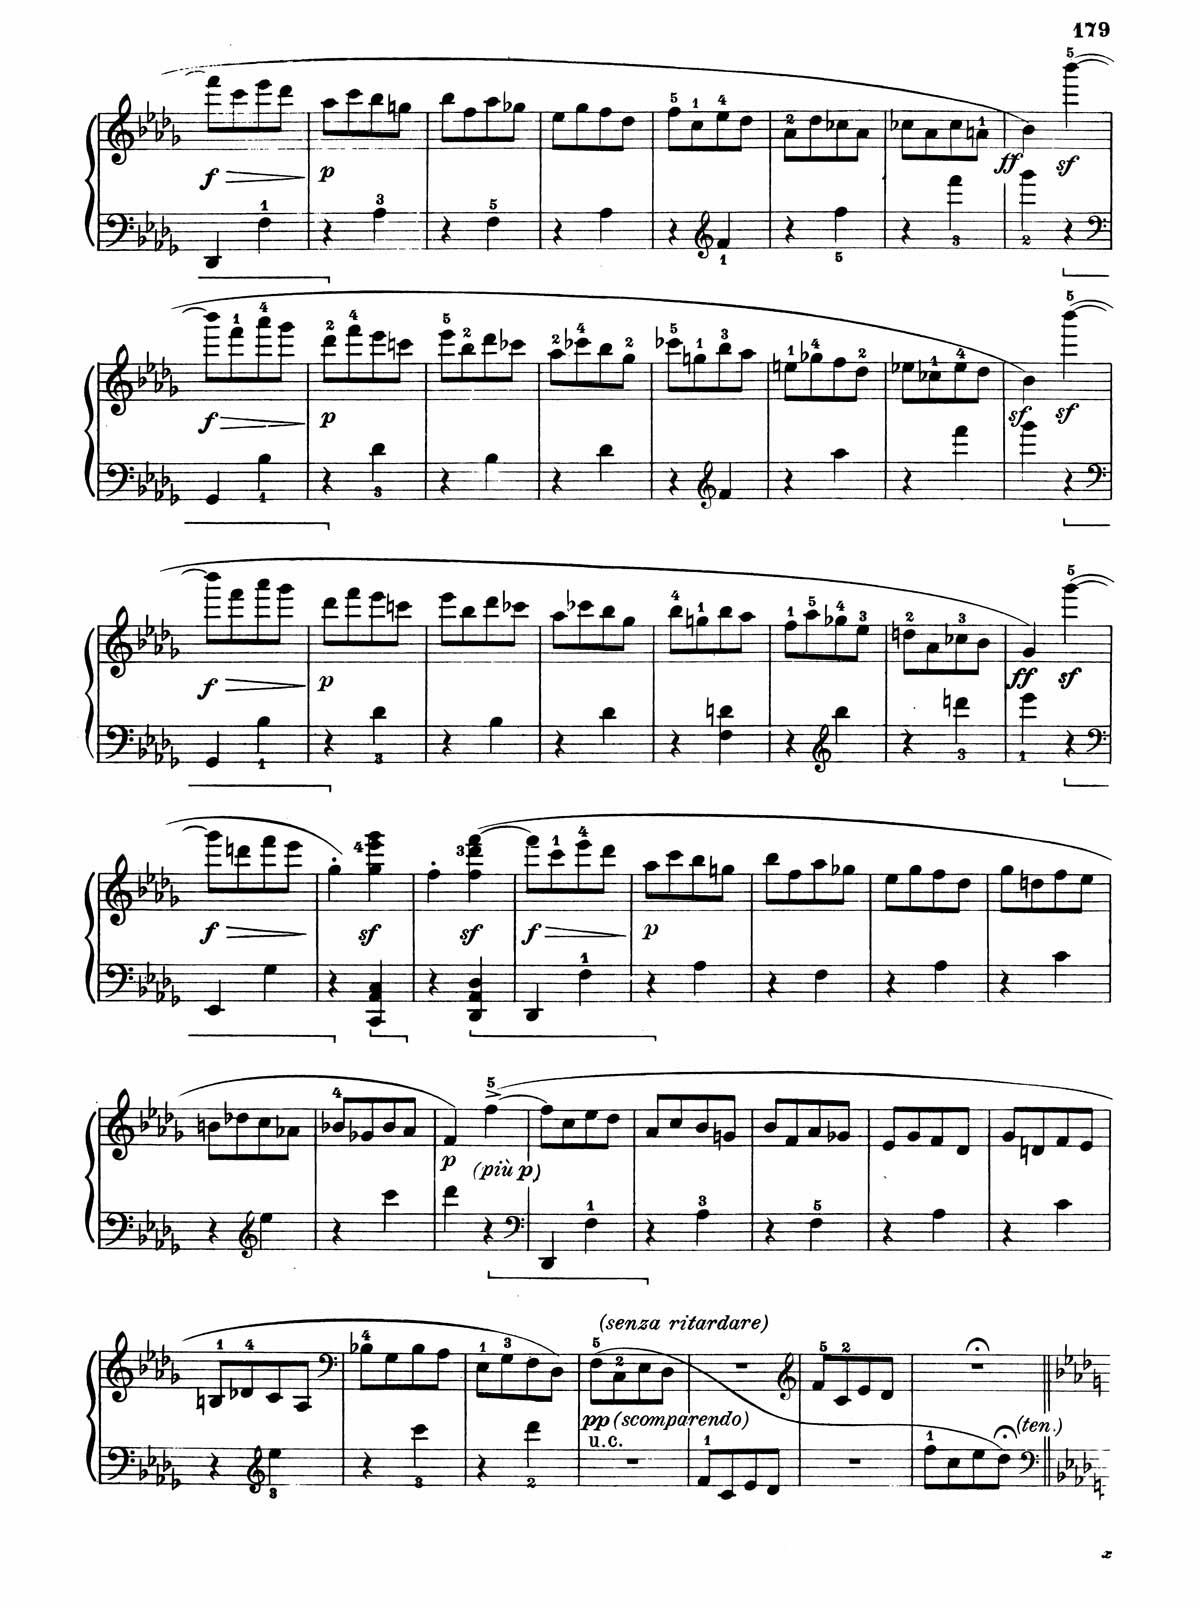 Beethoven Piano Sonata 31-10 sheet music